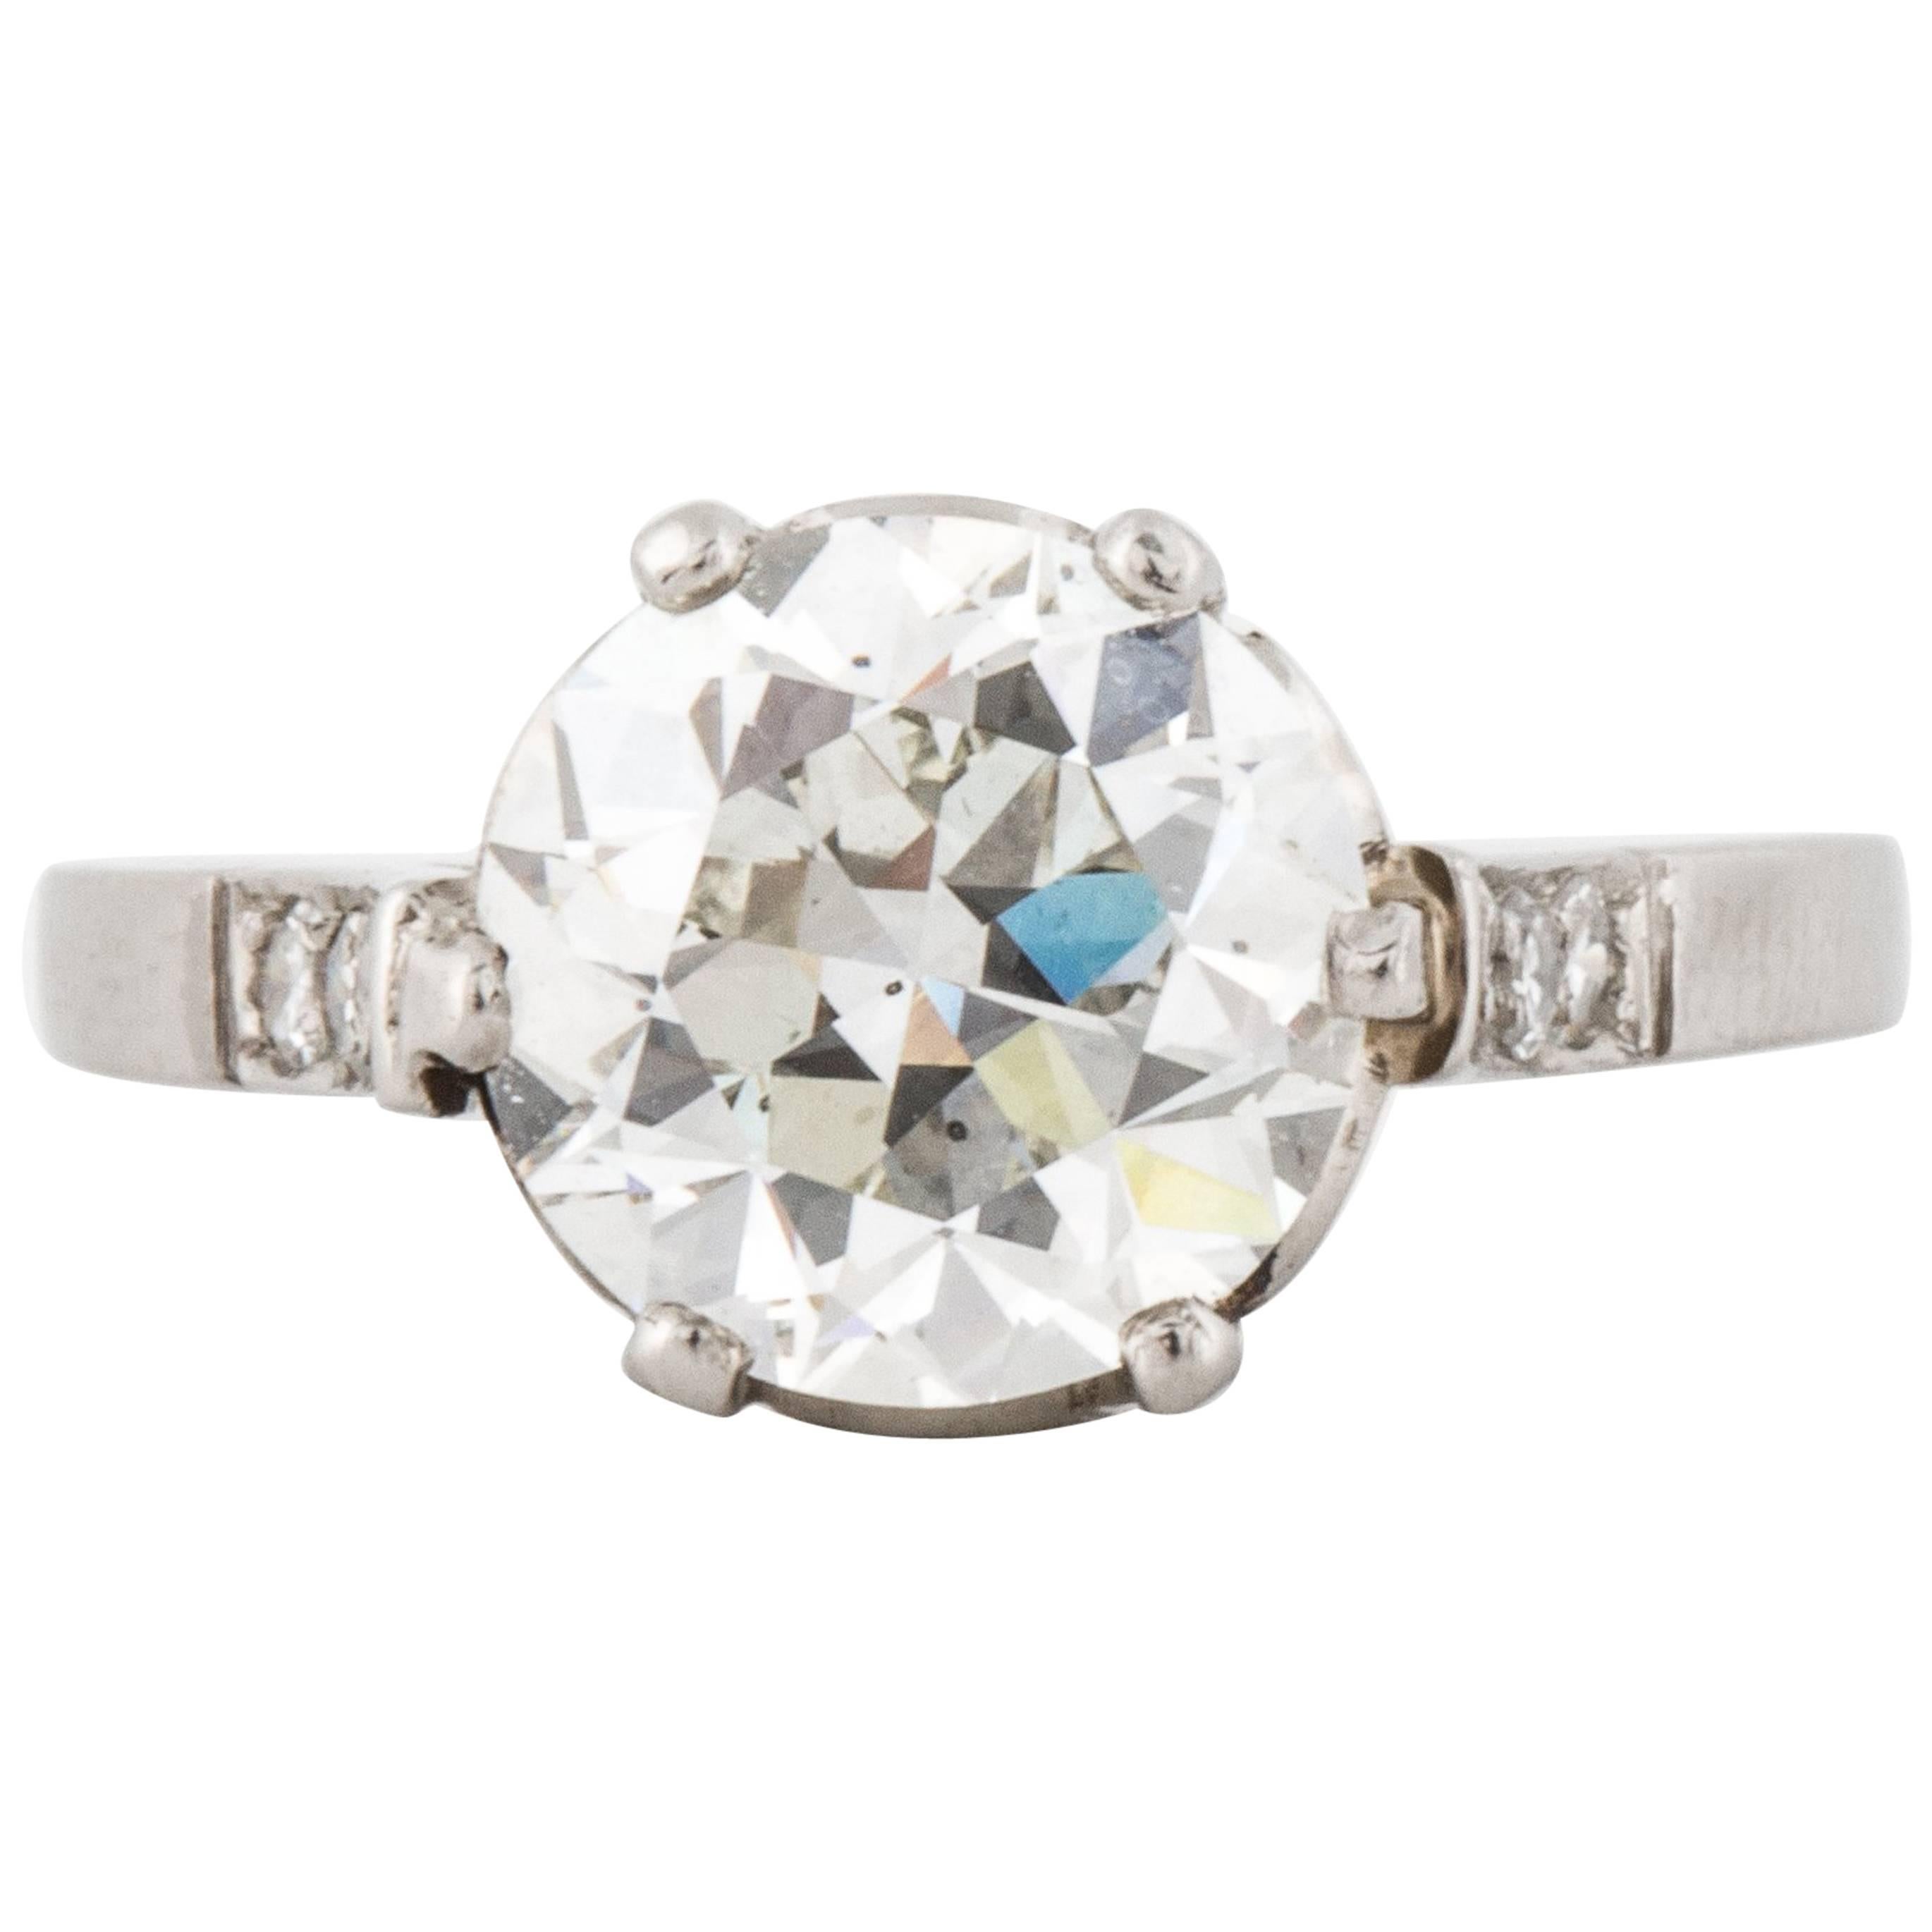 GIA Certified 2.54 Carat Old European-Cut Diamond Engagement Ring